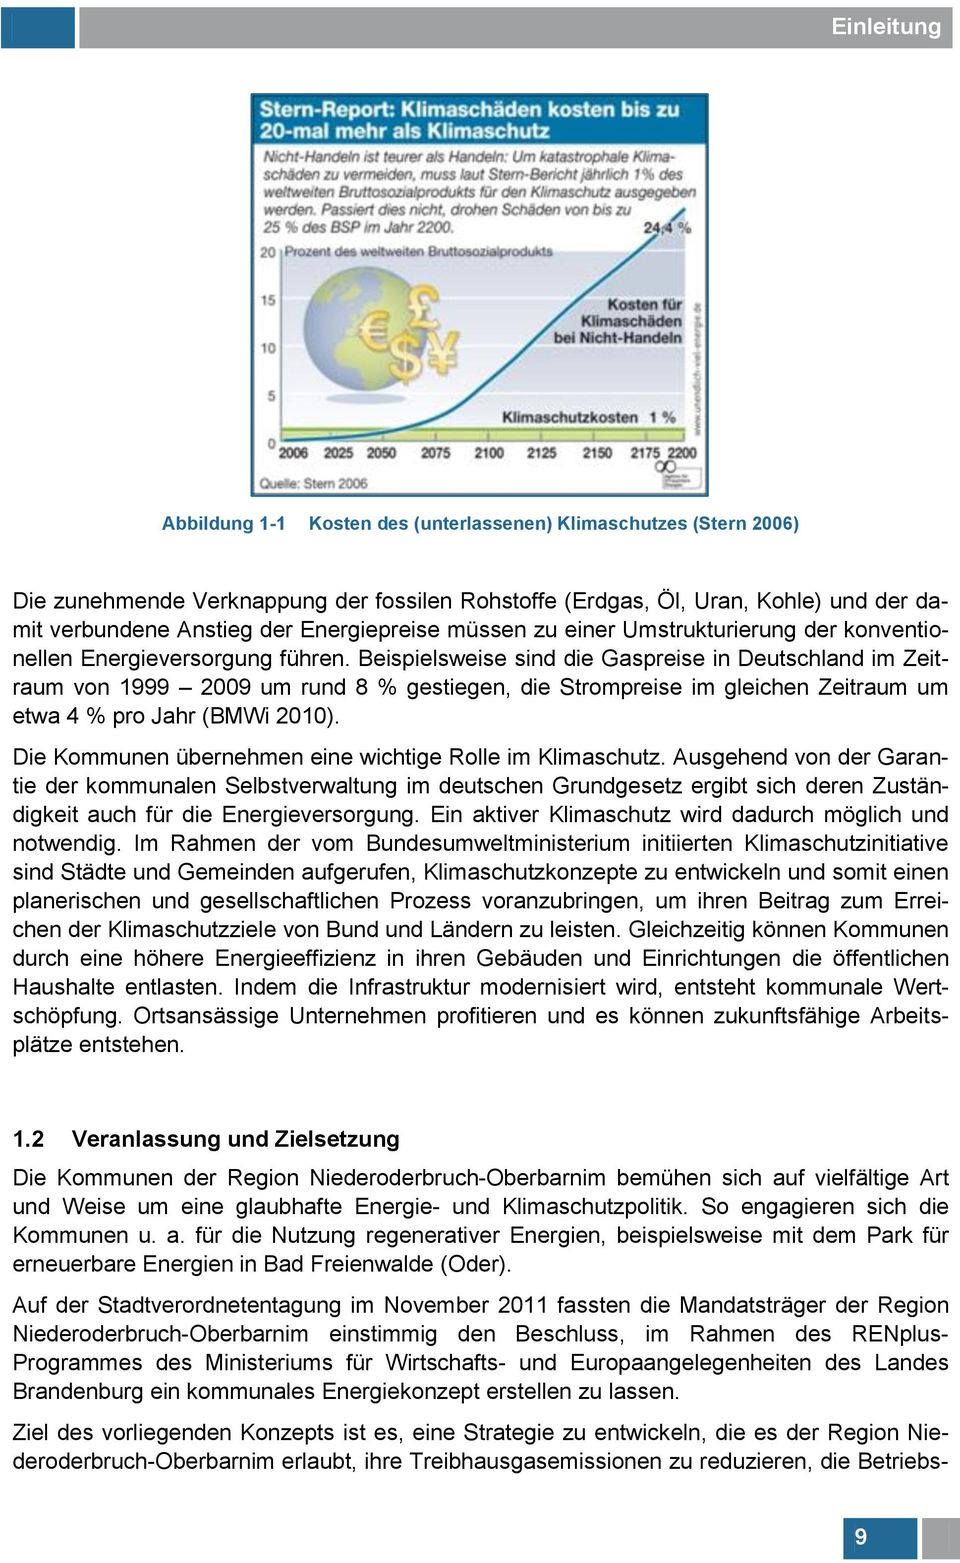 Beispielsweise sind die Gaspreise in Deutschland im Zeitraum von 1999 2009 um rund 8 % gestiegen, die Strompreise im gleichen Zeitraum um etwa 4 % pro Jahr (BMWi 2010).